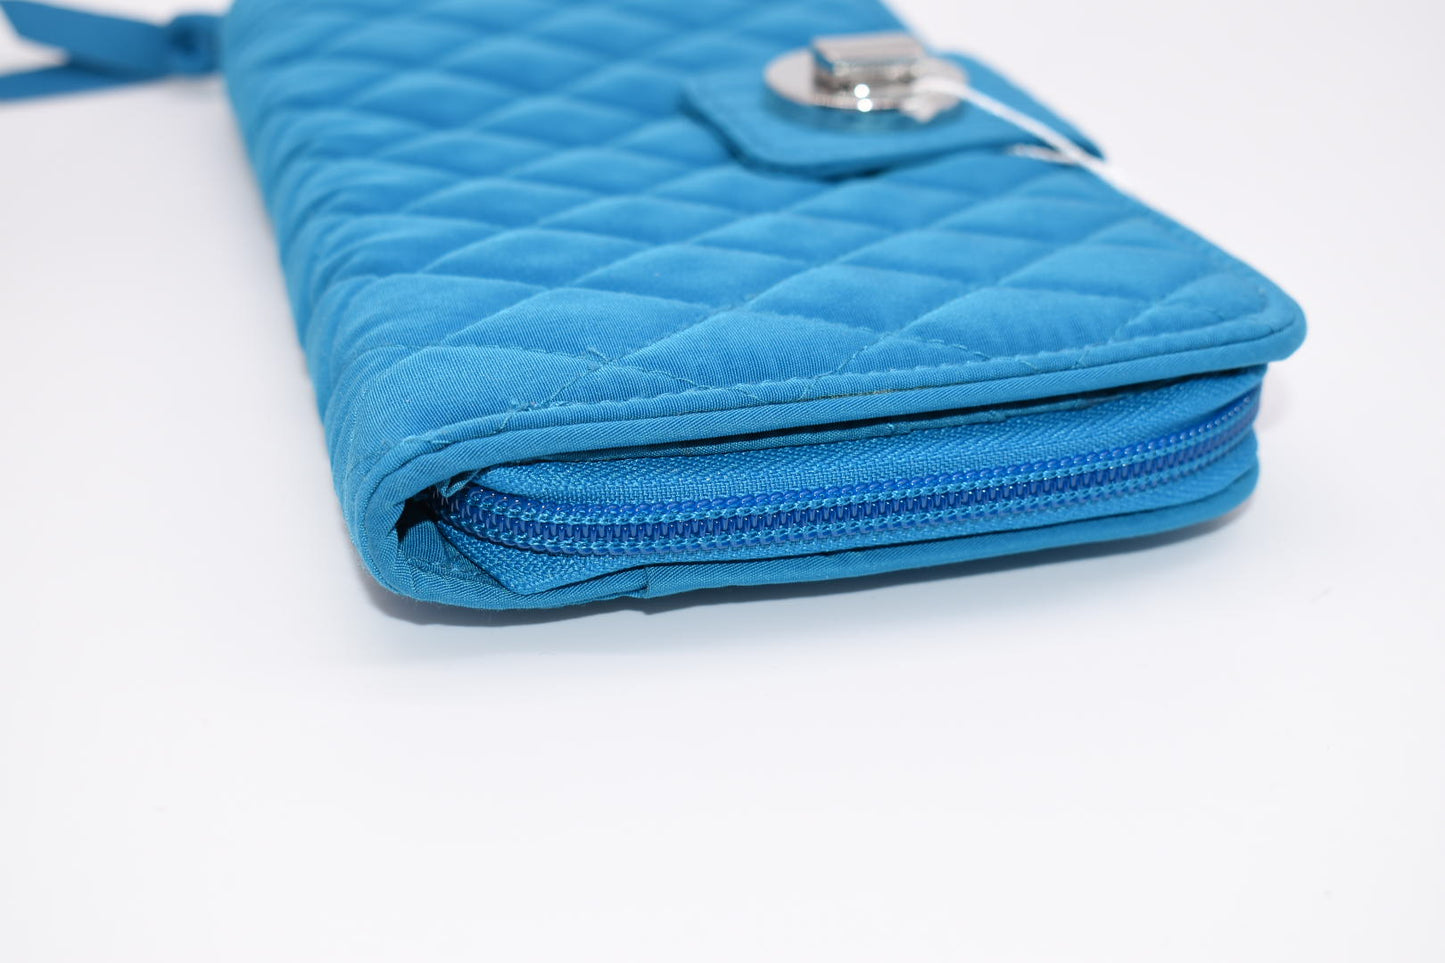 Vera Bradley RFID Microfiber Blue Turnlock Wallet